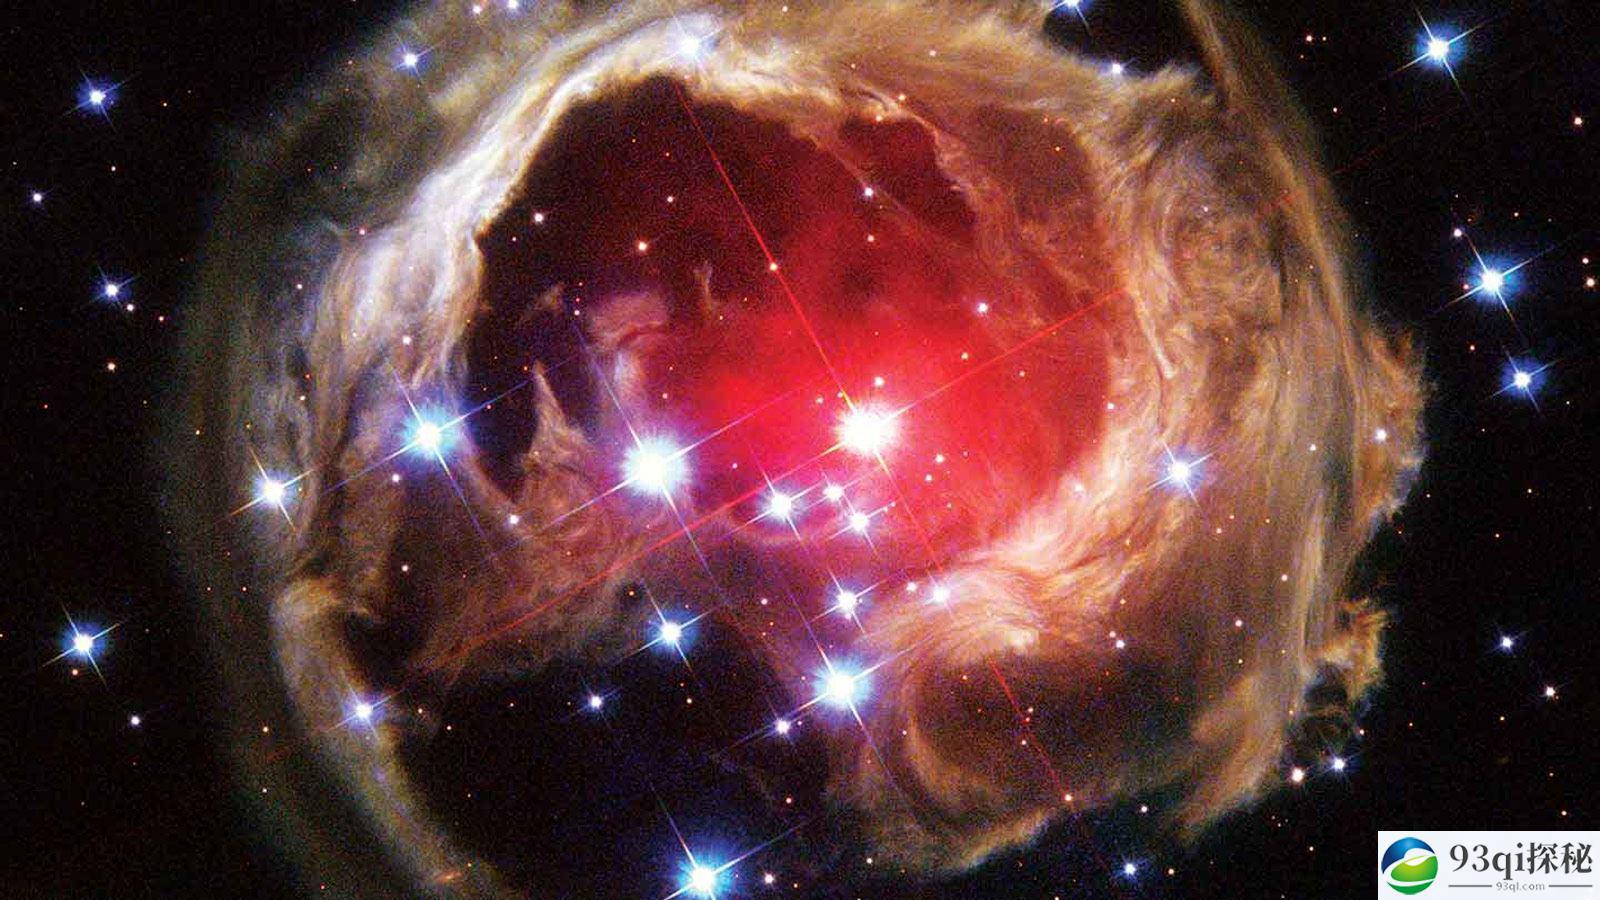 天文学家预测 2022 年前后有可能发生红新星爆炸